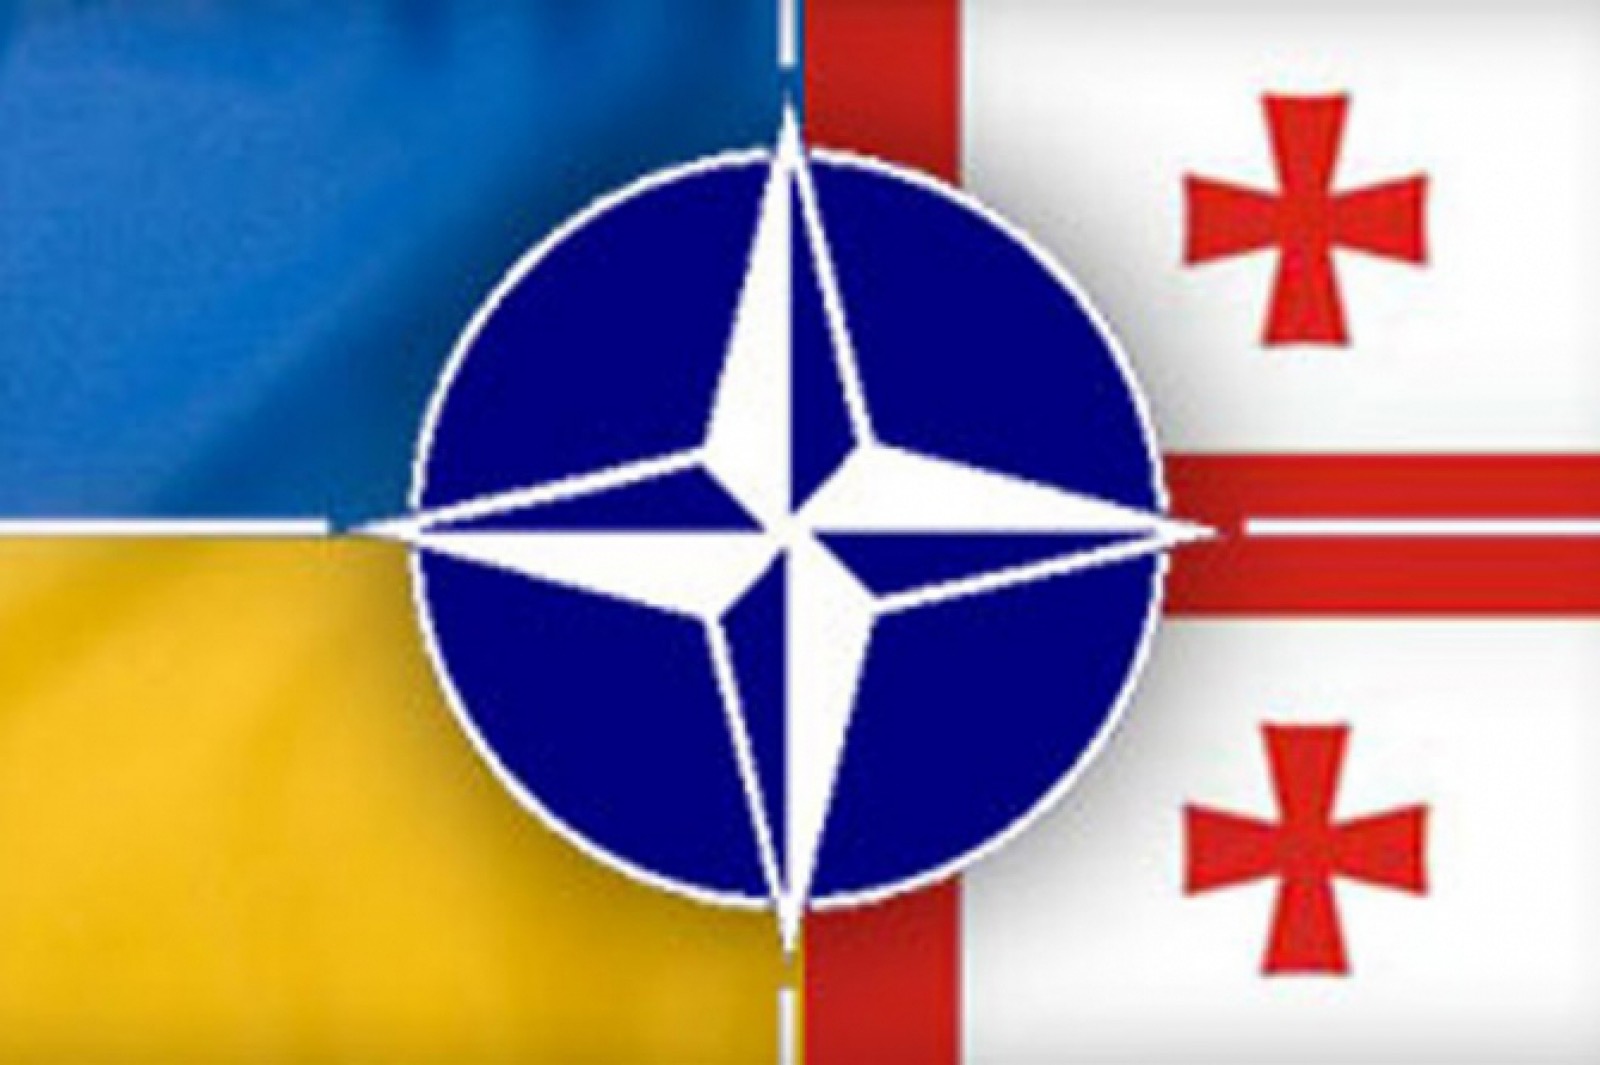 Саммит НАТО не назовет возможные сроки вступления Грузии и Украины в альянс - генсек 